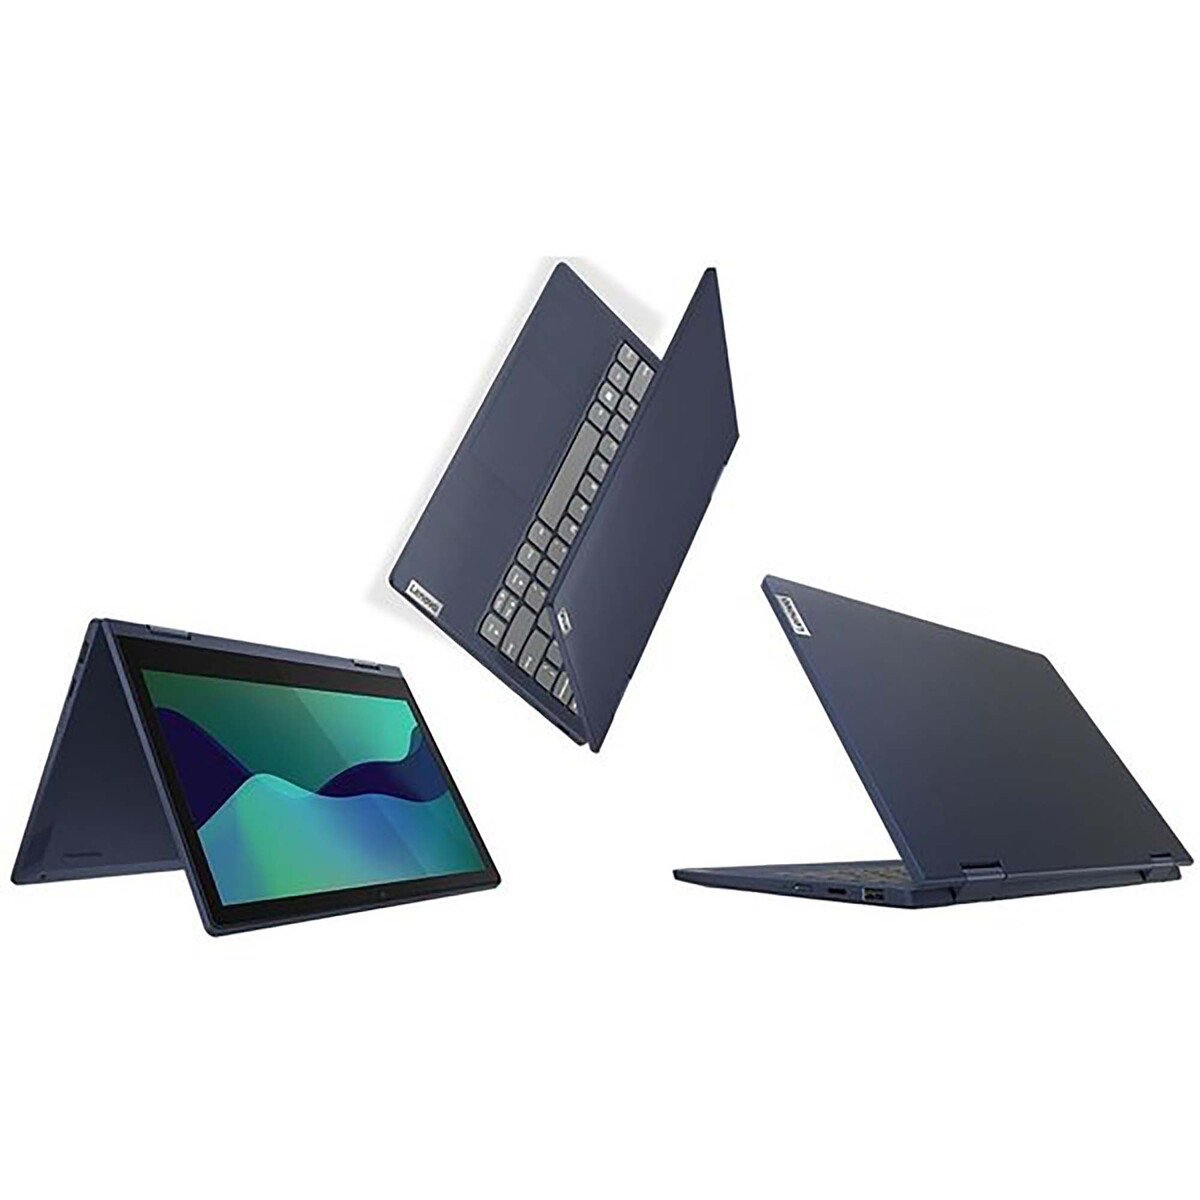 Lenovo IdeaPad Flex 3,2in1 Notebook (82B2007KAX),Intel Celeron N4020,4GB RAM,128GB SSD, 11.6"HD,Windows 11,Abyss Blue,English-Arabic Keyboard